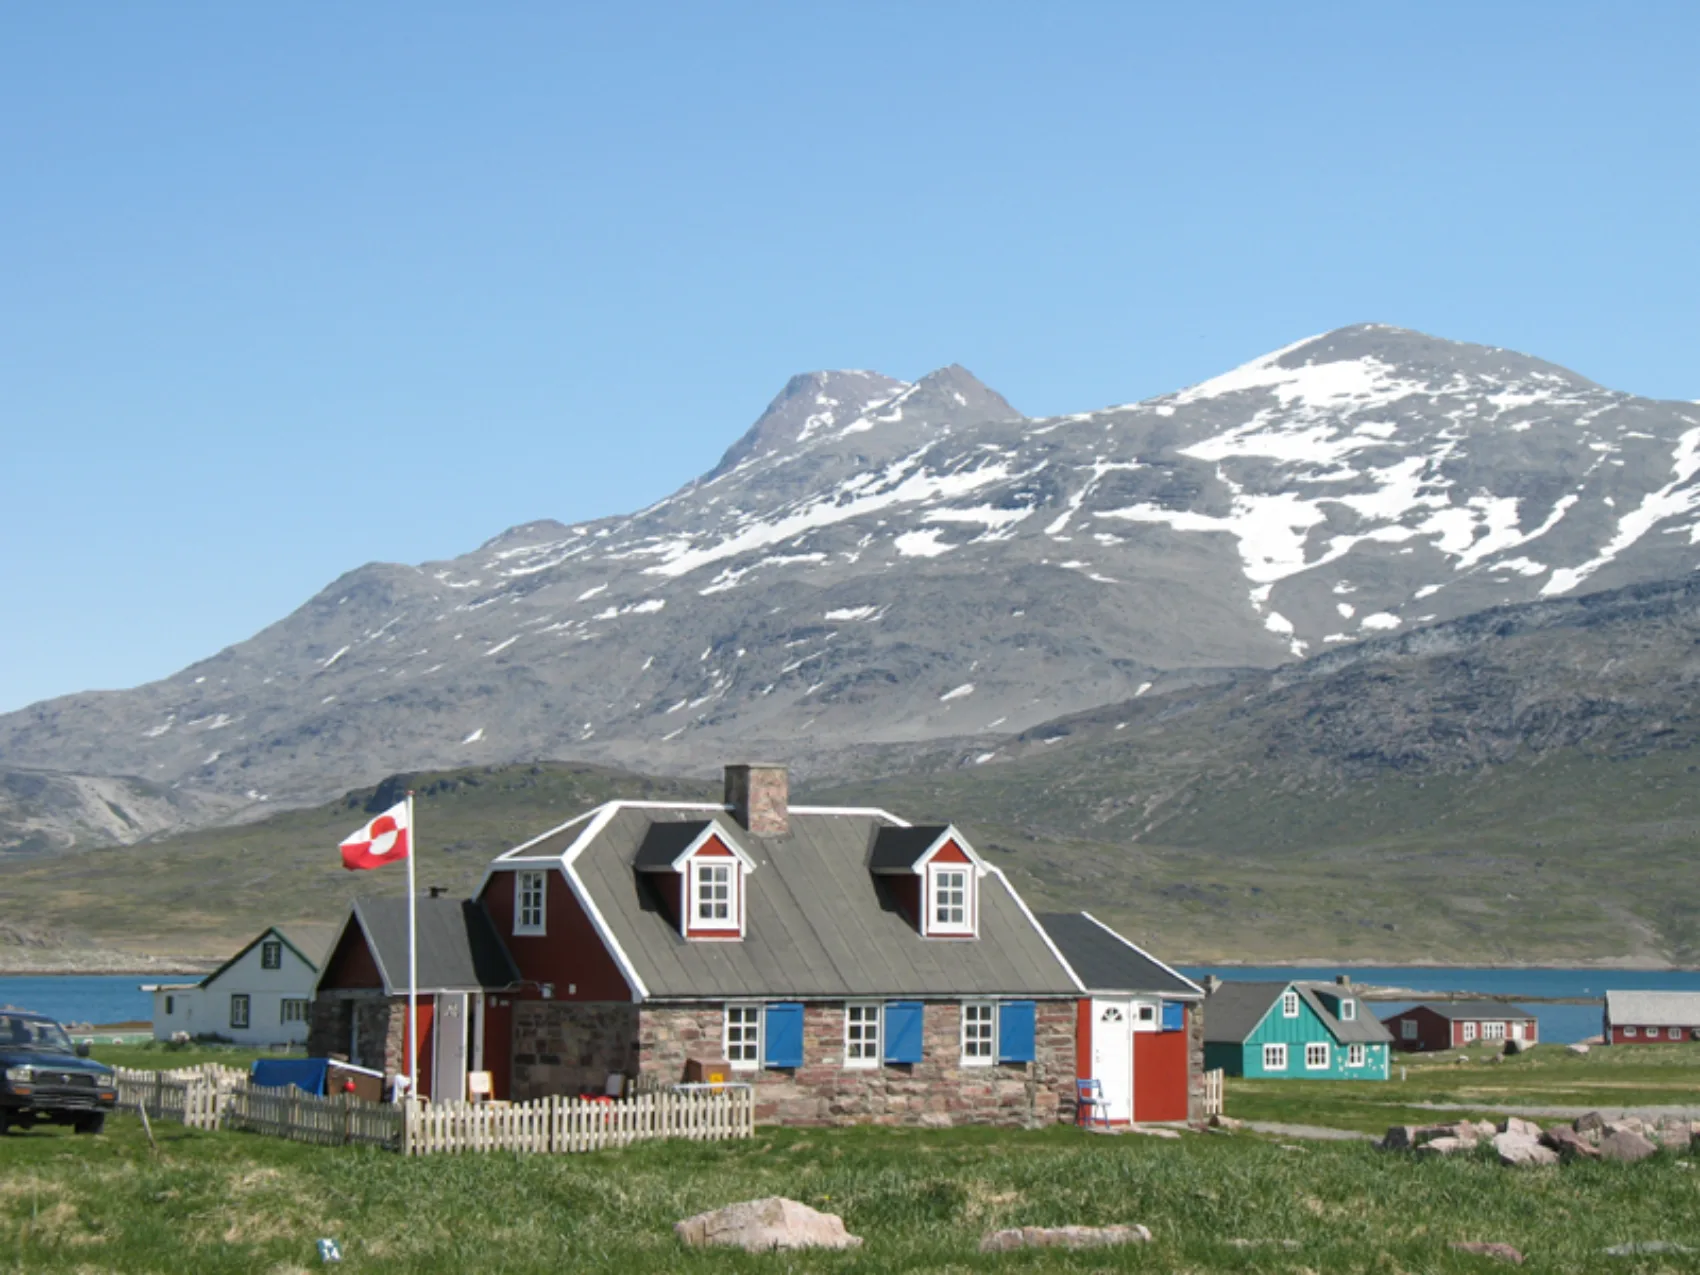 Südgrönland: Siedlung Igaliku
Steinhaus mit Fahne im Garten
Im Hintergrund leicht mit Schnee bedeckte Berge